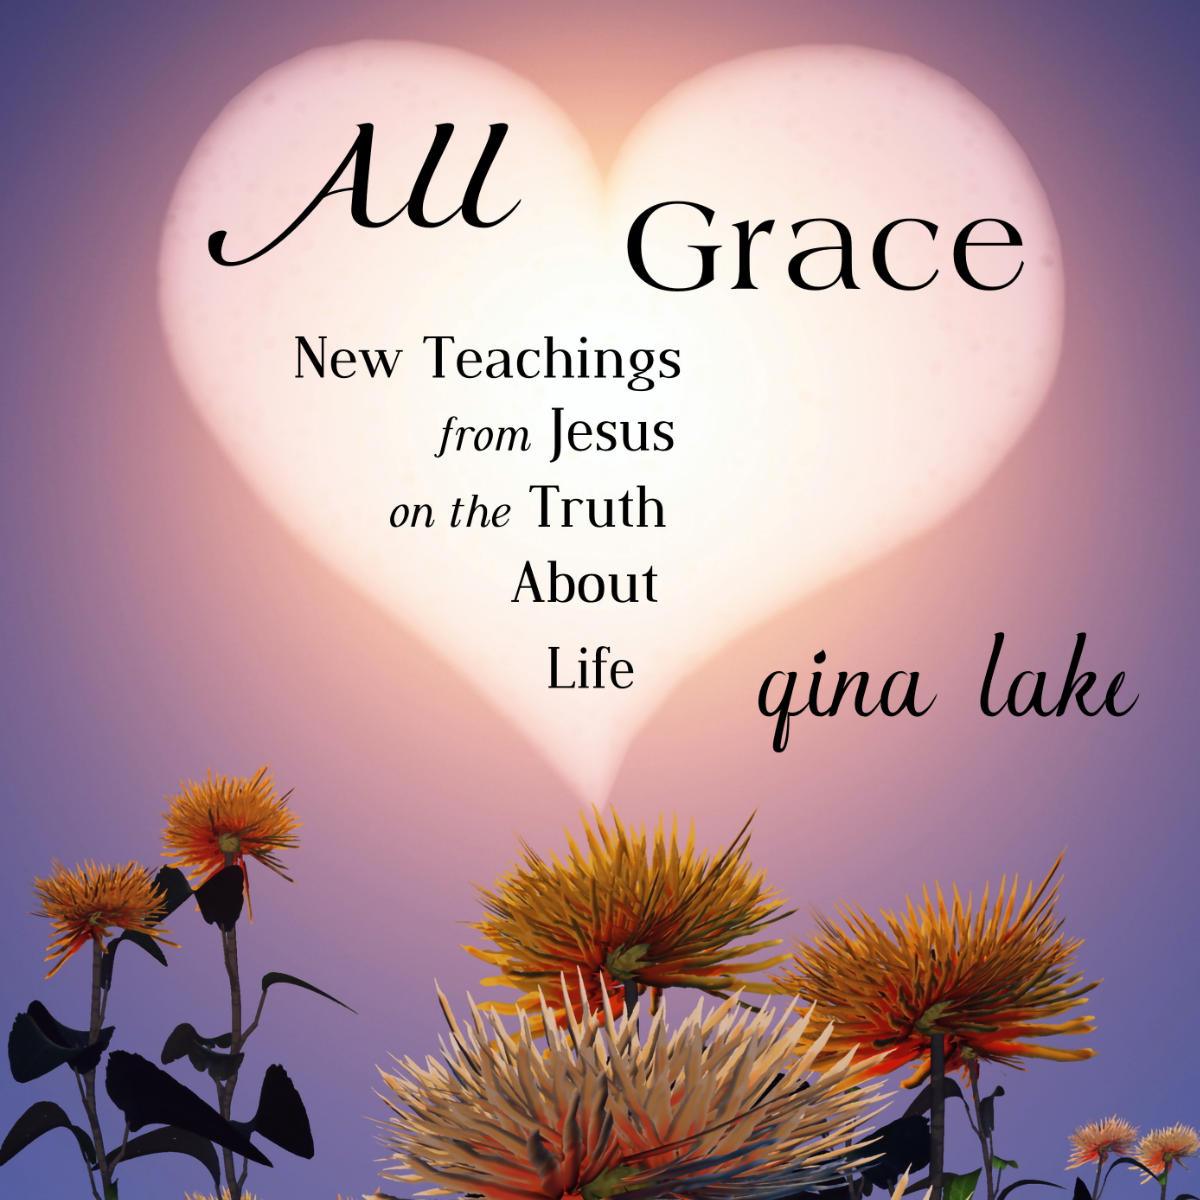 Awakening Love by Gina Lake